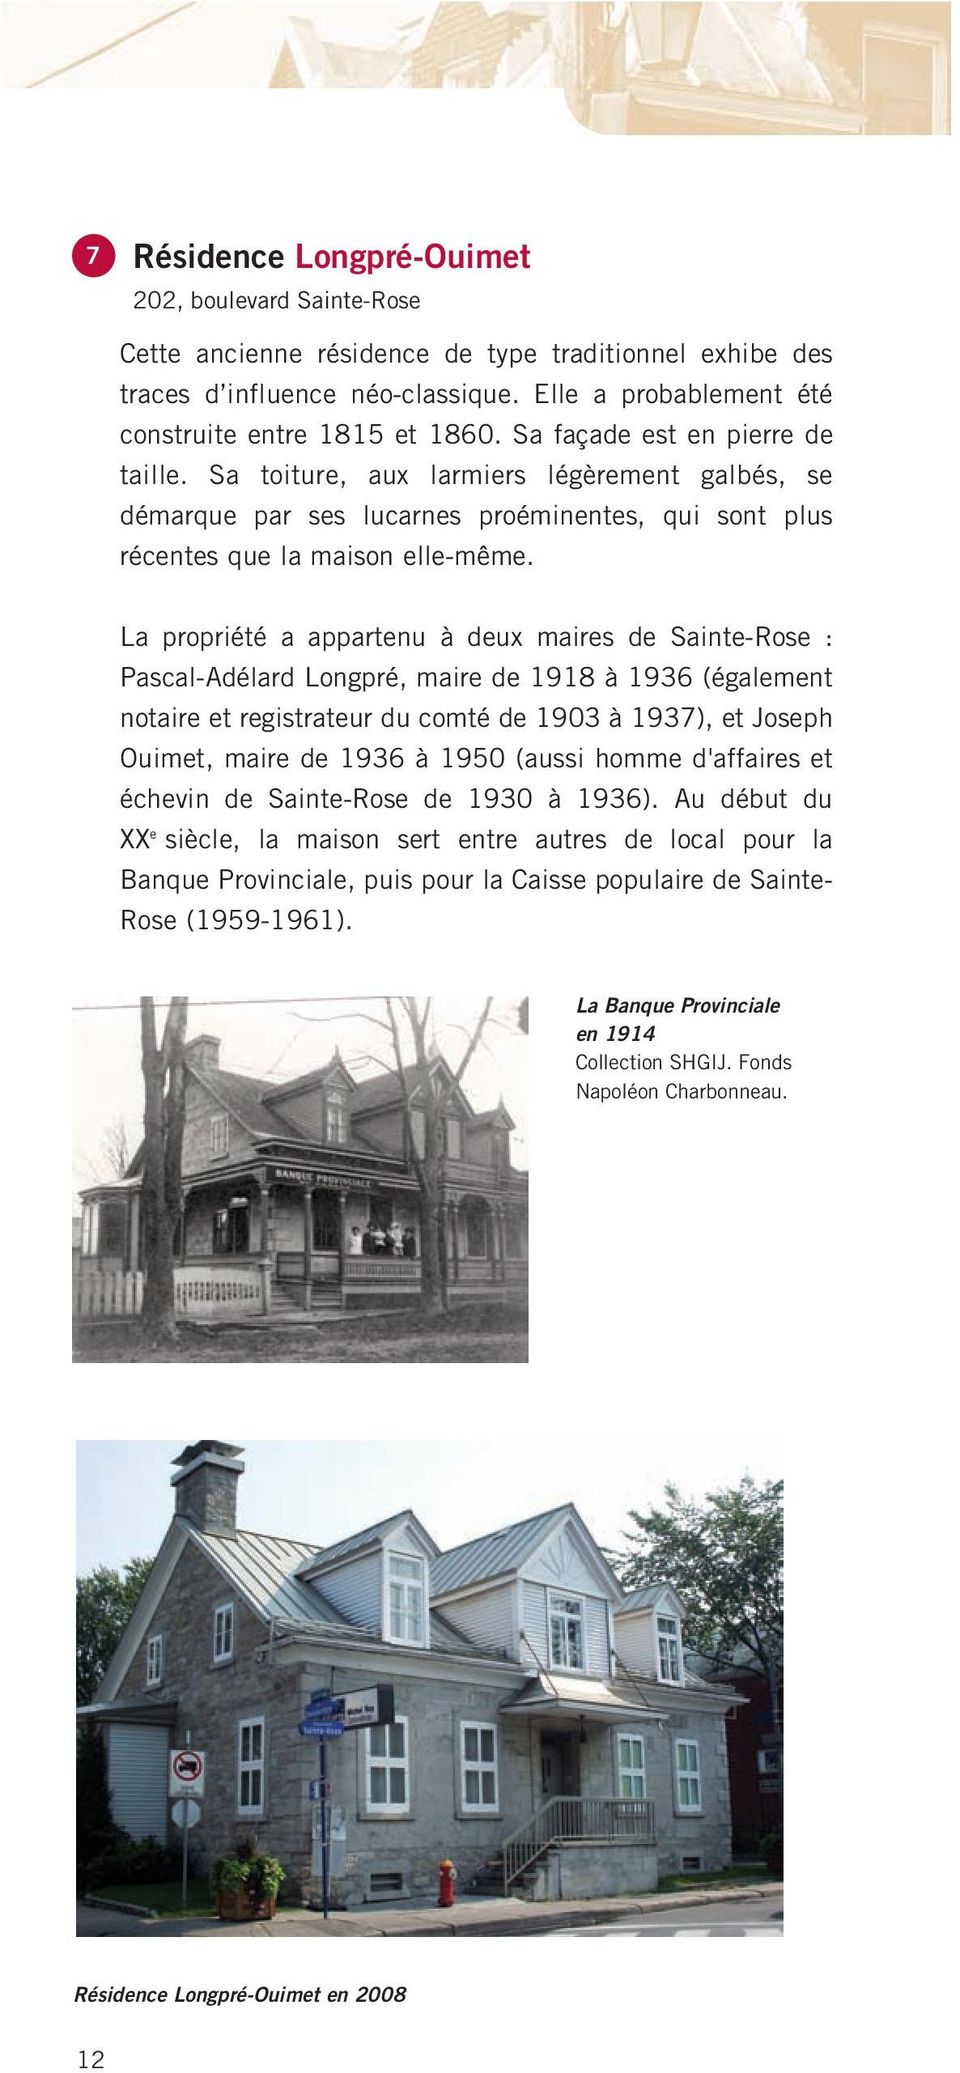 La propriété a appartenu à deux maires de Sainte-Rose : Pascal-Adélard Longpré, maire de 1918 à 1936 (également notaire et registrateur du comté de 1903 à 1937), et Joseph Ouimet, maire de 1936 à